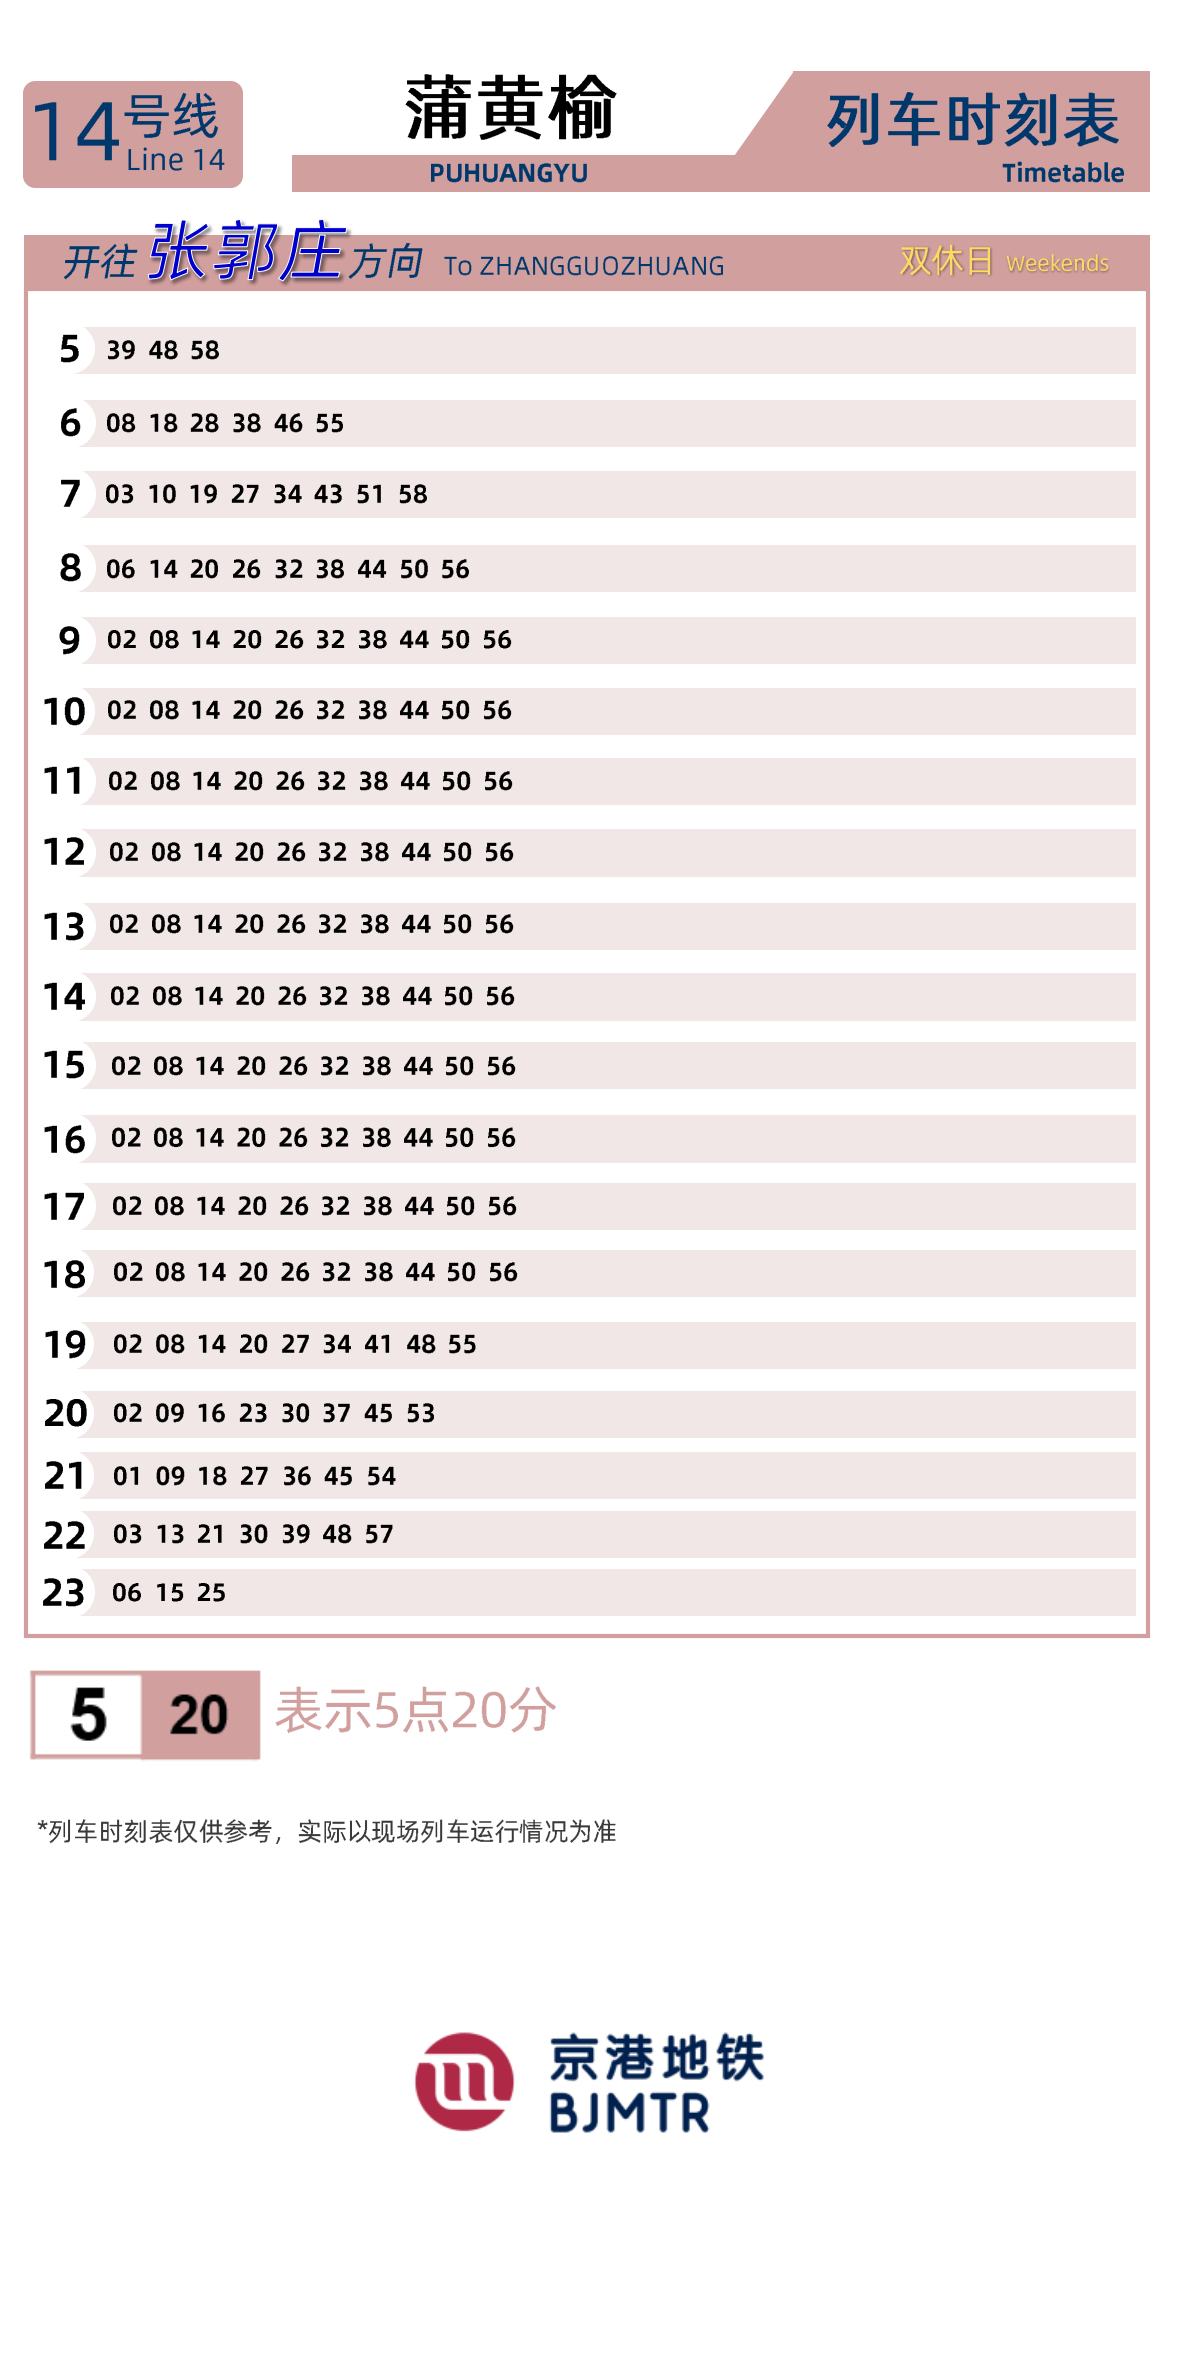 Line 14Puhuangyu时刻表